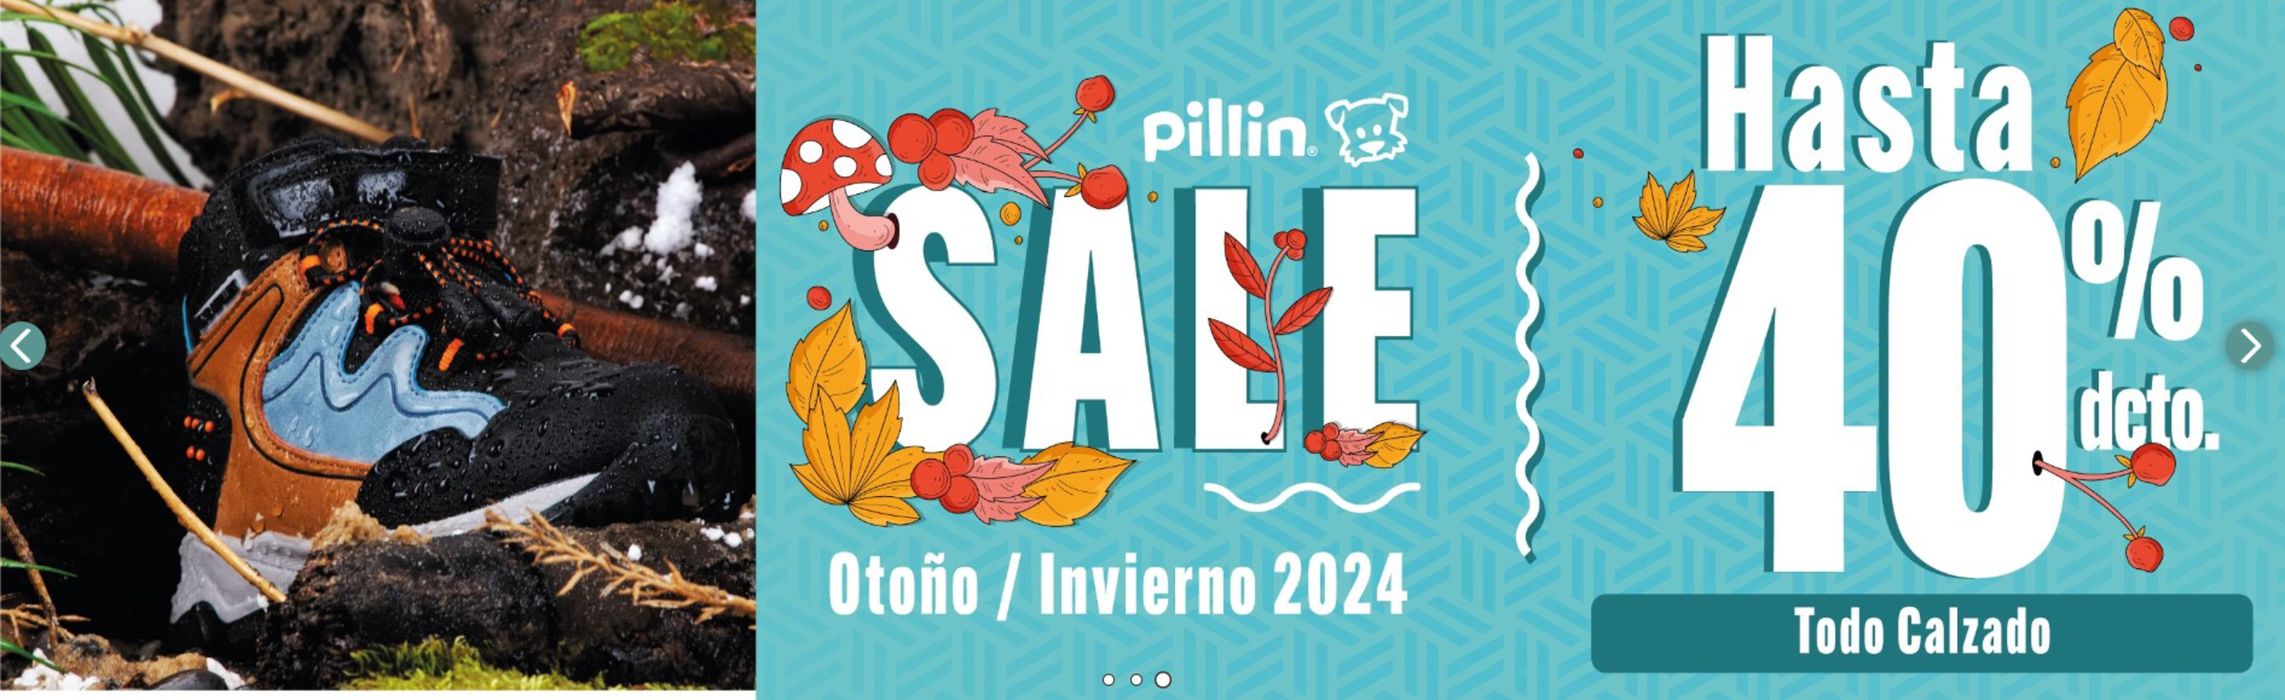 Catálogo Pillin | Pillin hasta 60 % dcto ! | 25-06-2024 - 31-07-2024